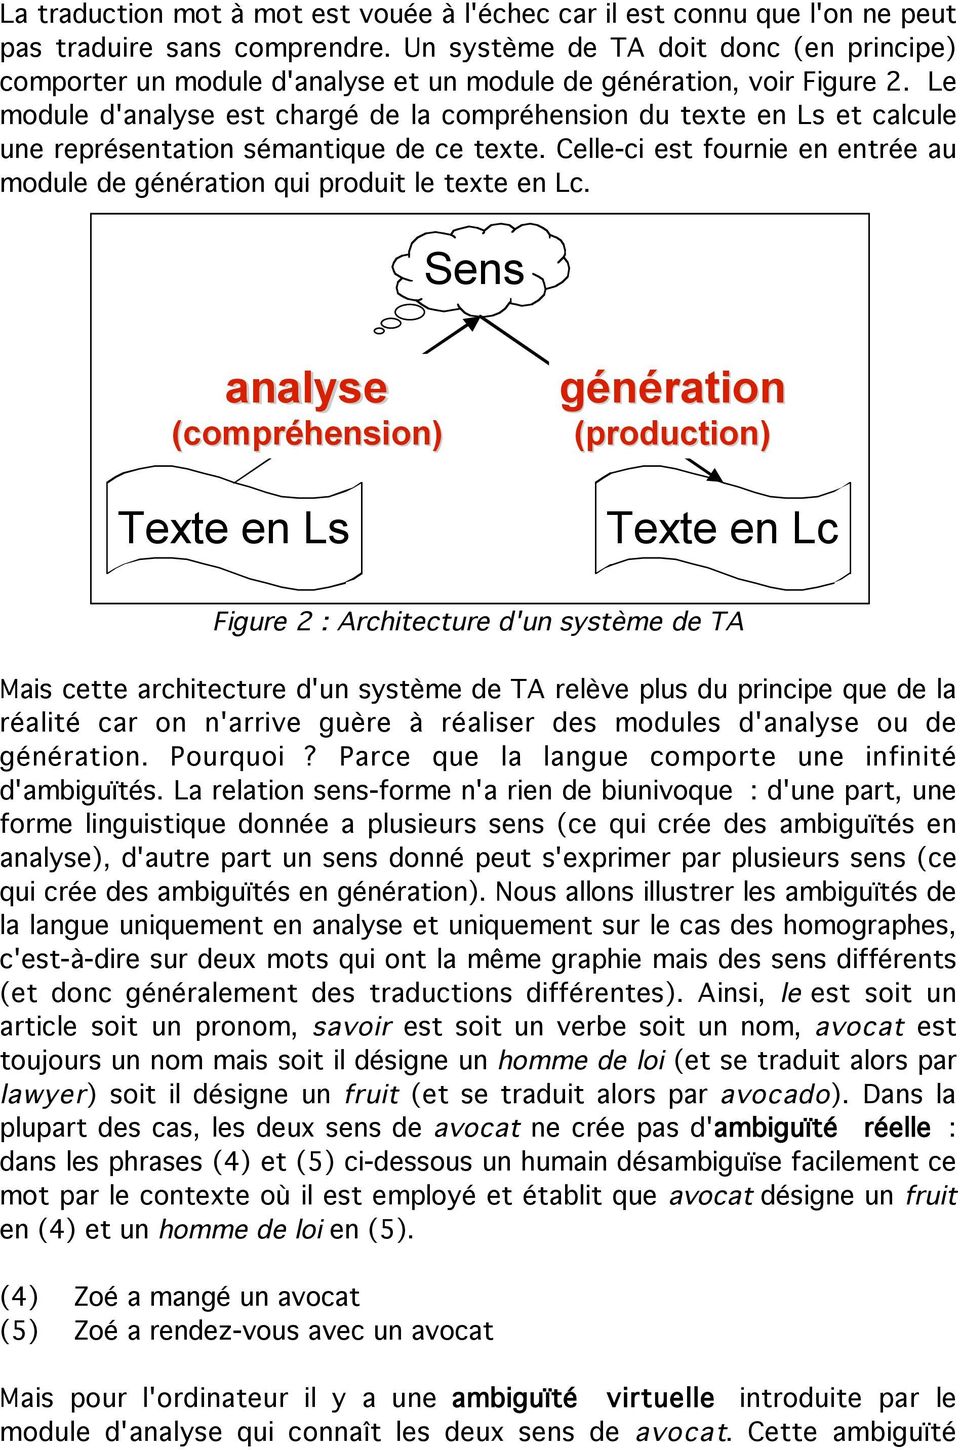 Le module d'analyse est chargé de la compréhension du texte en Ls et calcule une représentation sémantique de ce texte.